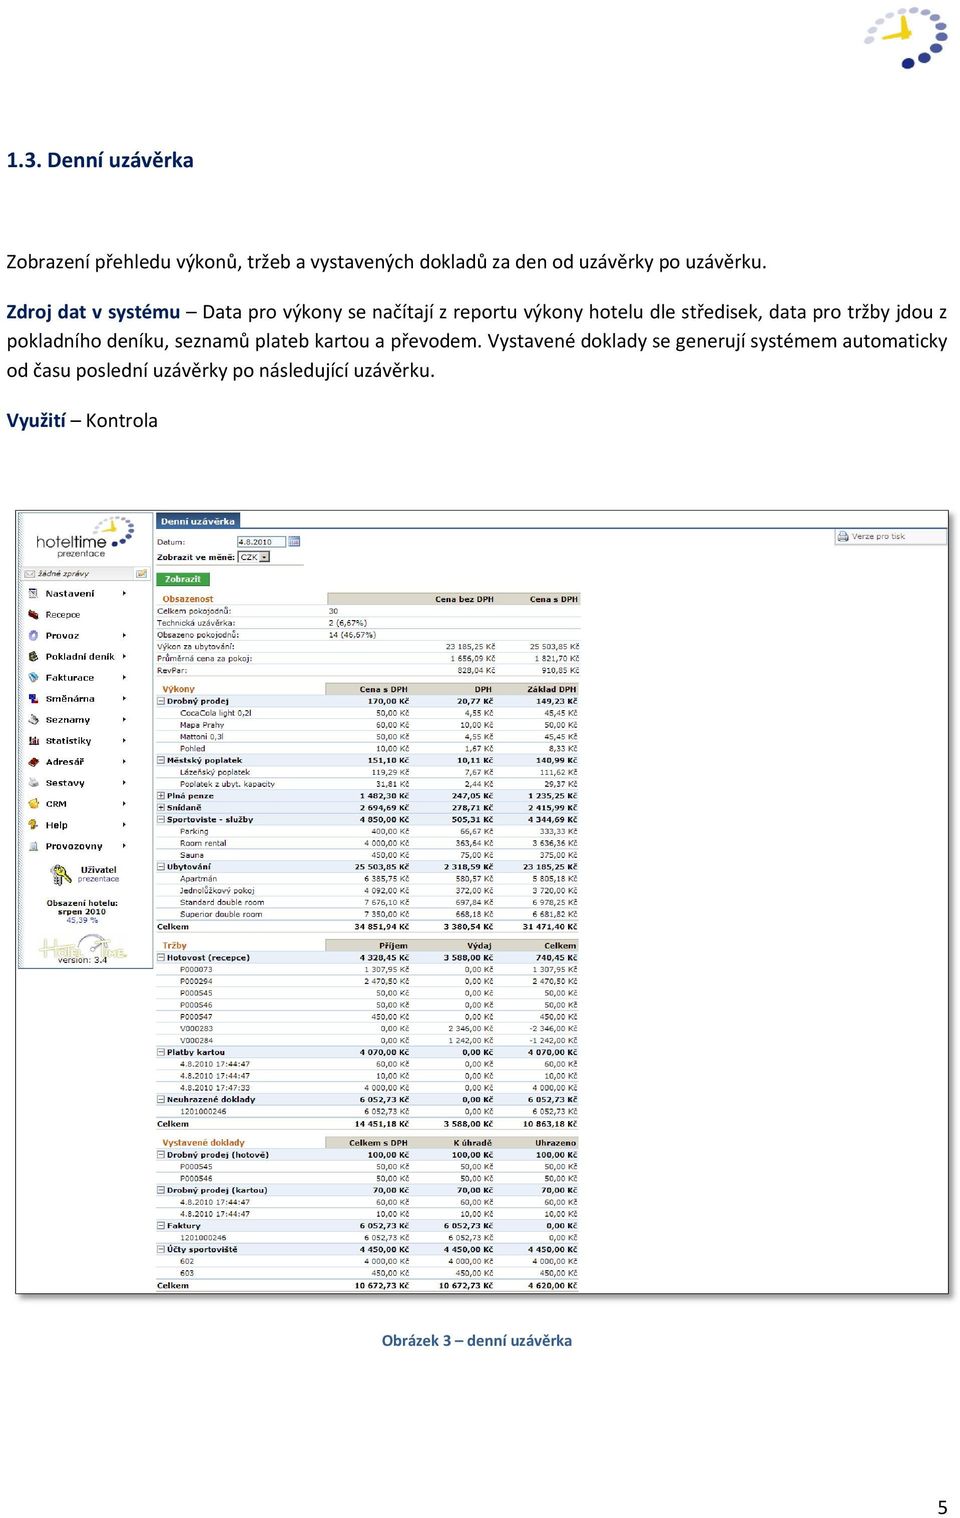 Zdroj dat v systému Data pro výkony se načítají z reportu výkony hotelu dle středisek, data pro tržby